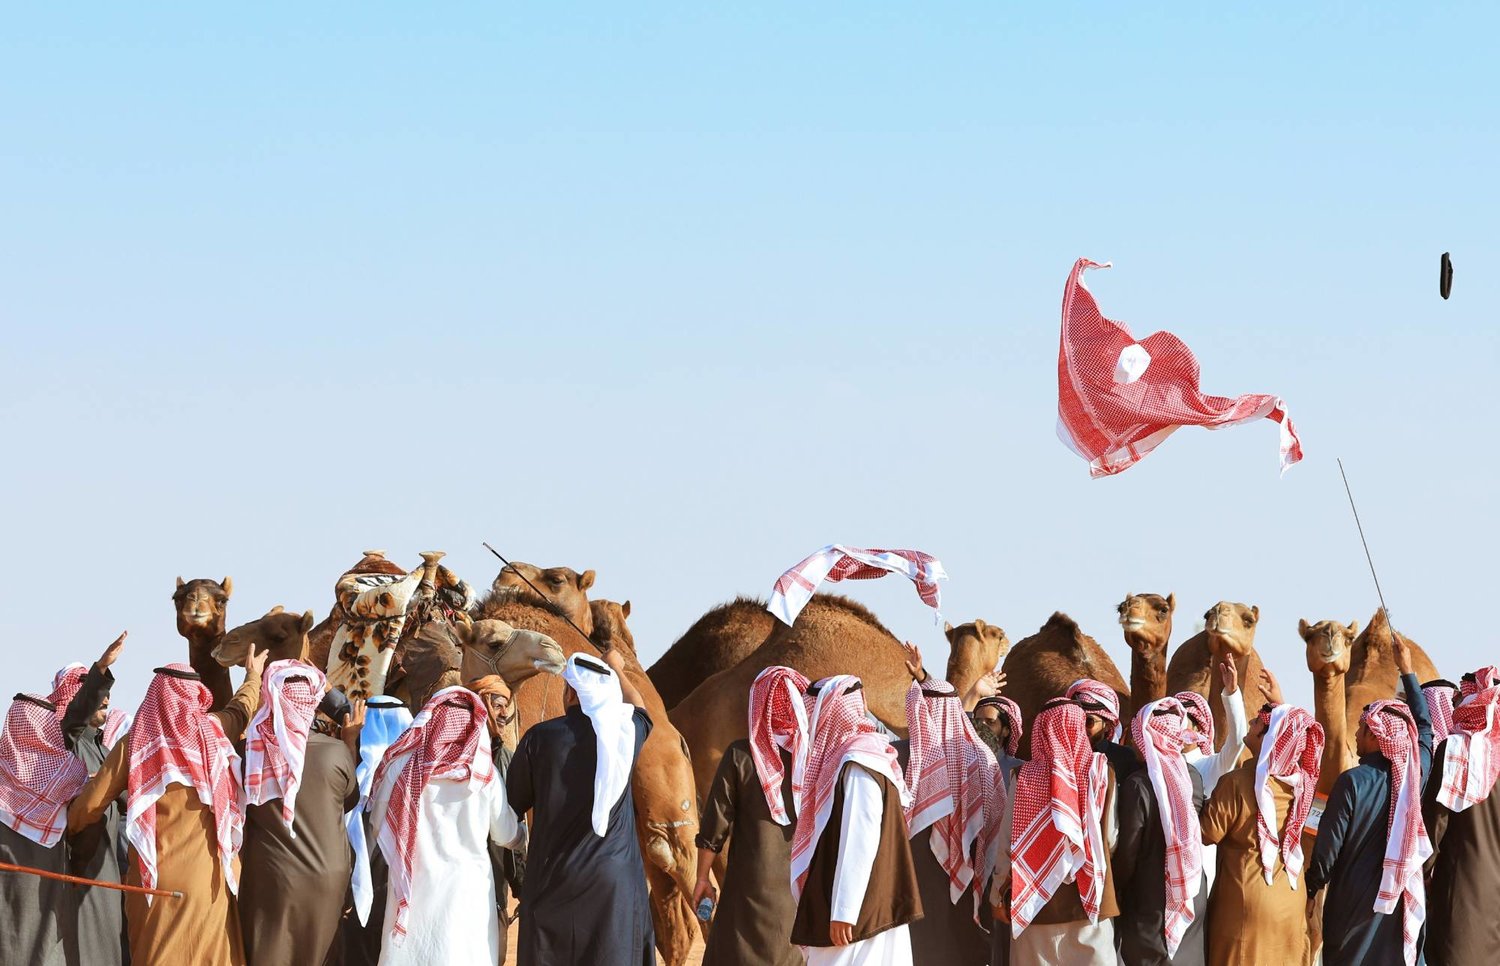 فعاليات النسخة الثامنة من مهرجان الملك عبدالعزيز للإبل انطلقت تحت شعار "عز لأهلها" (الشرق الأوسط)